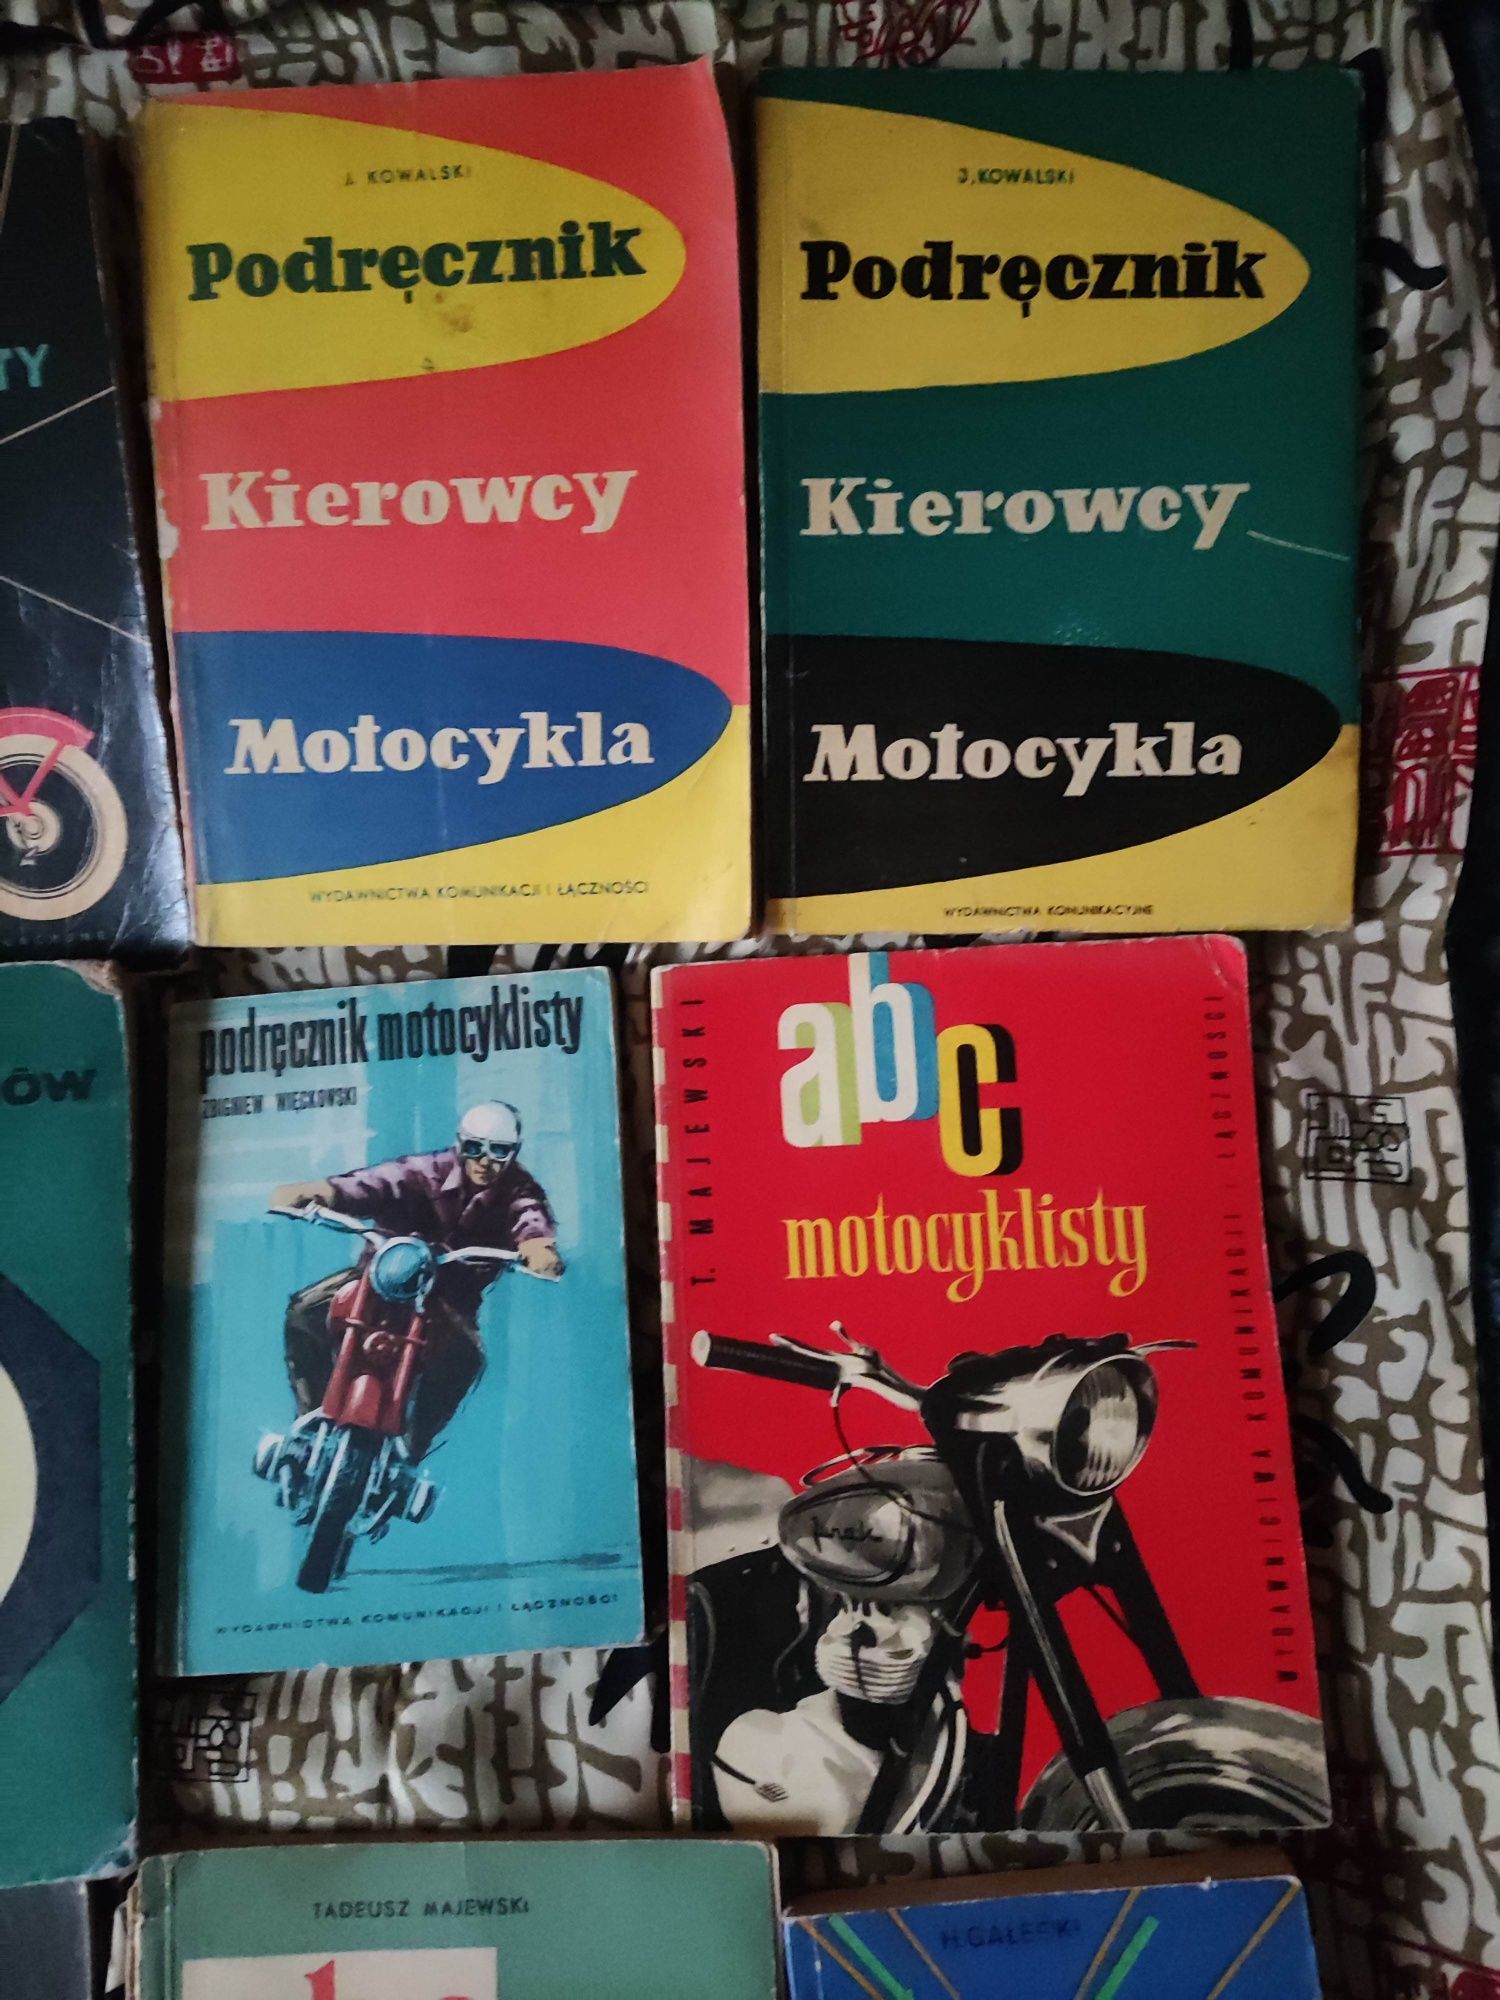 Książki o motocyklach i motorowerach z czasów PRL-u